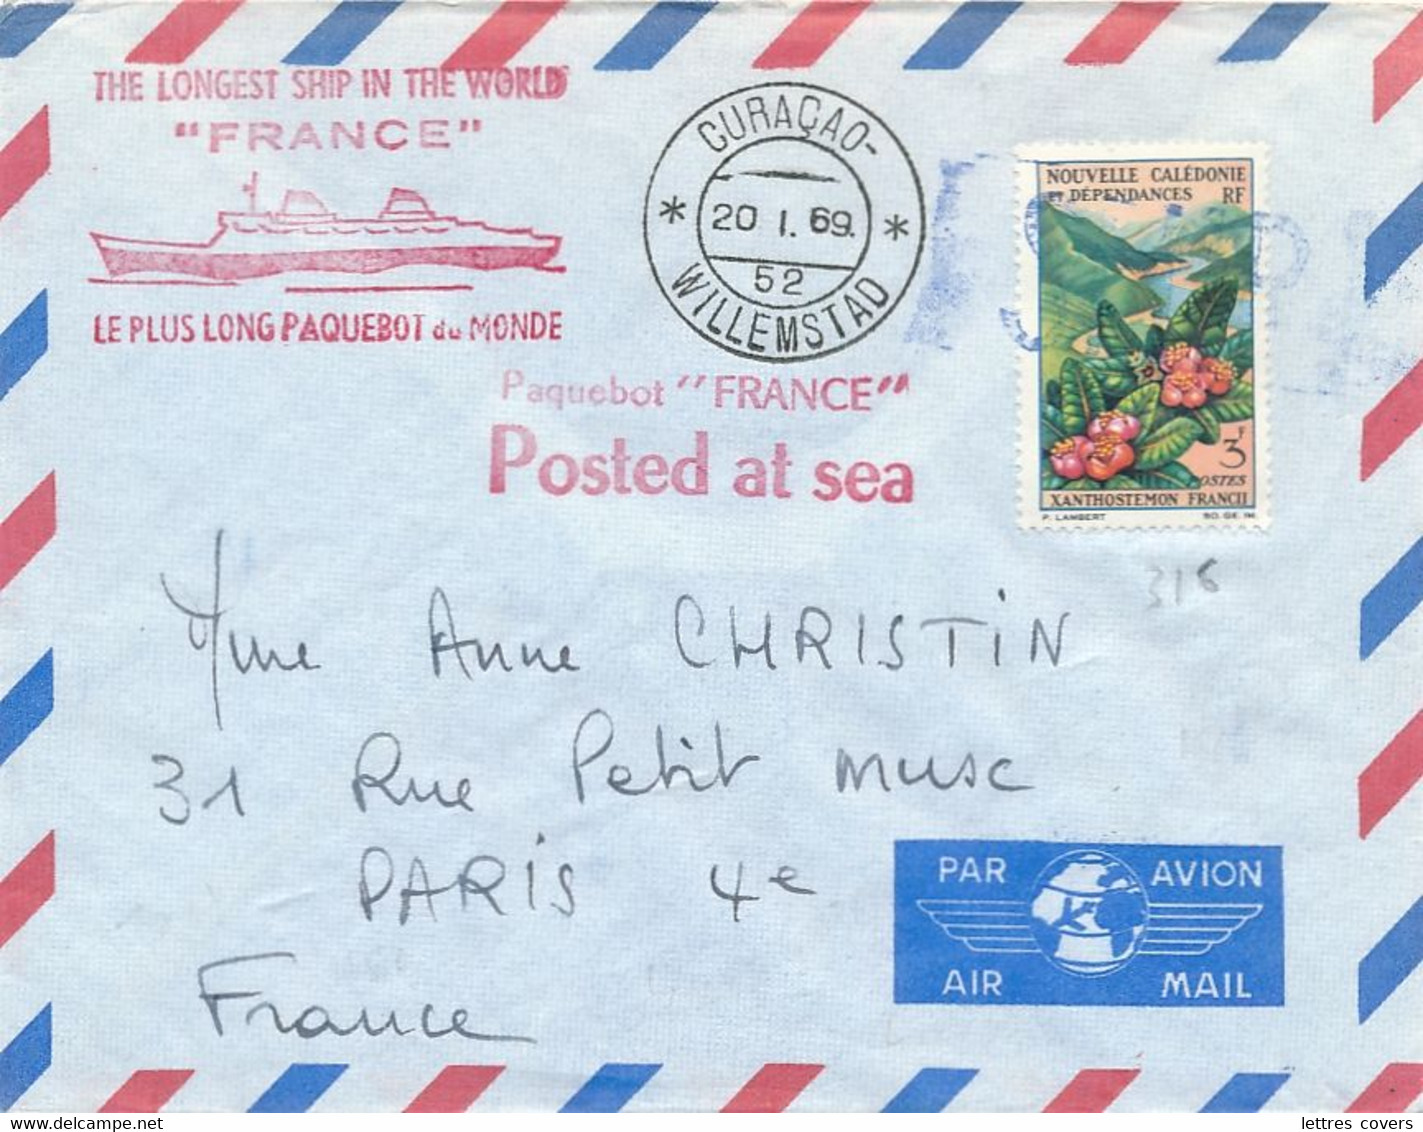 Nouvelle Calédonie 3f + CàD " CURAÇAO WILLEMSTAD 20/1/69 " Lettre Postée à Bord Paquebot " FRANCE " Seapost Maritime - Cartas & Documentos